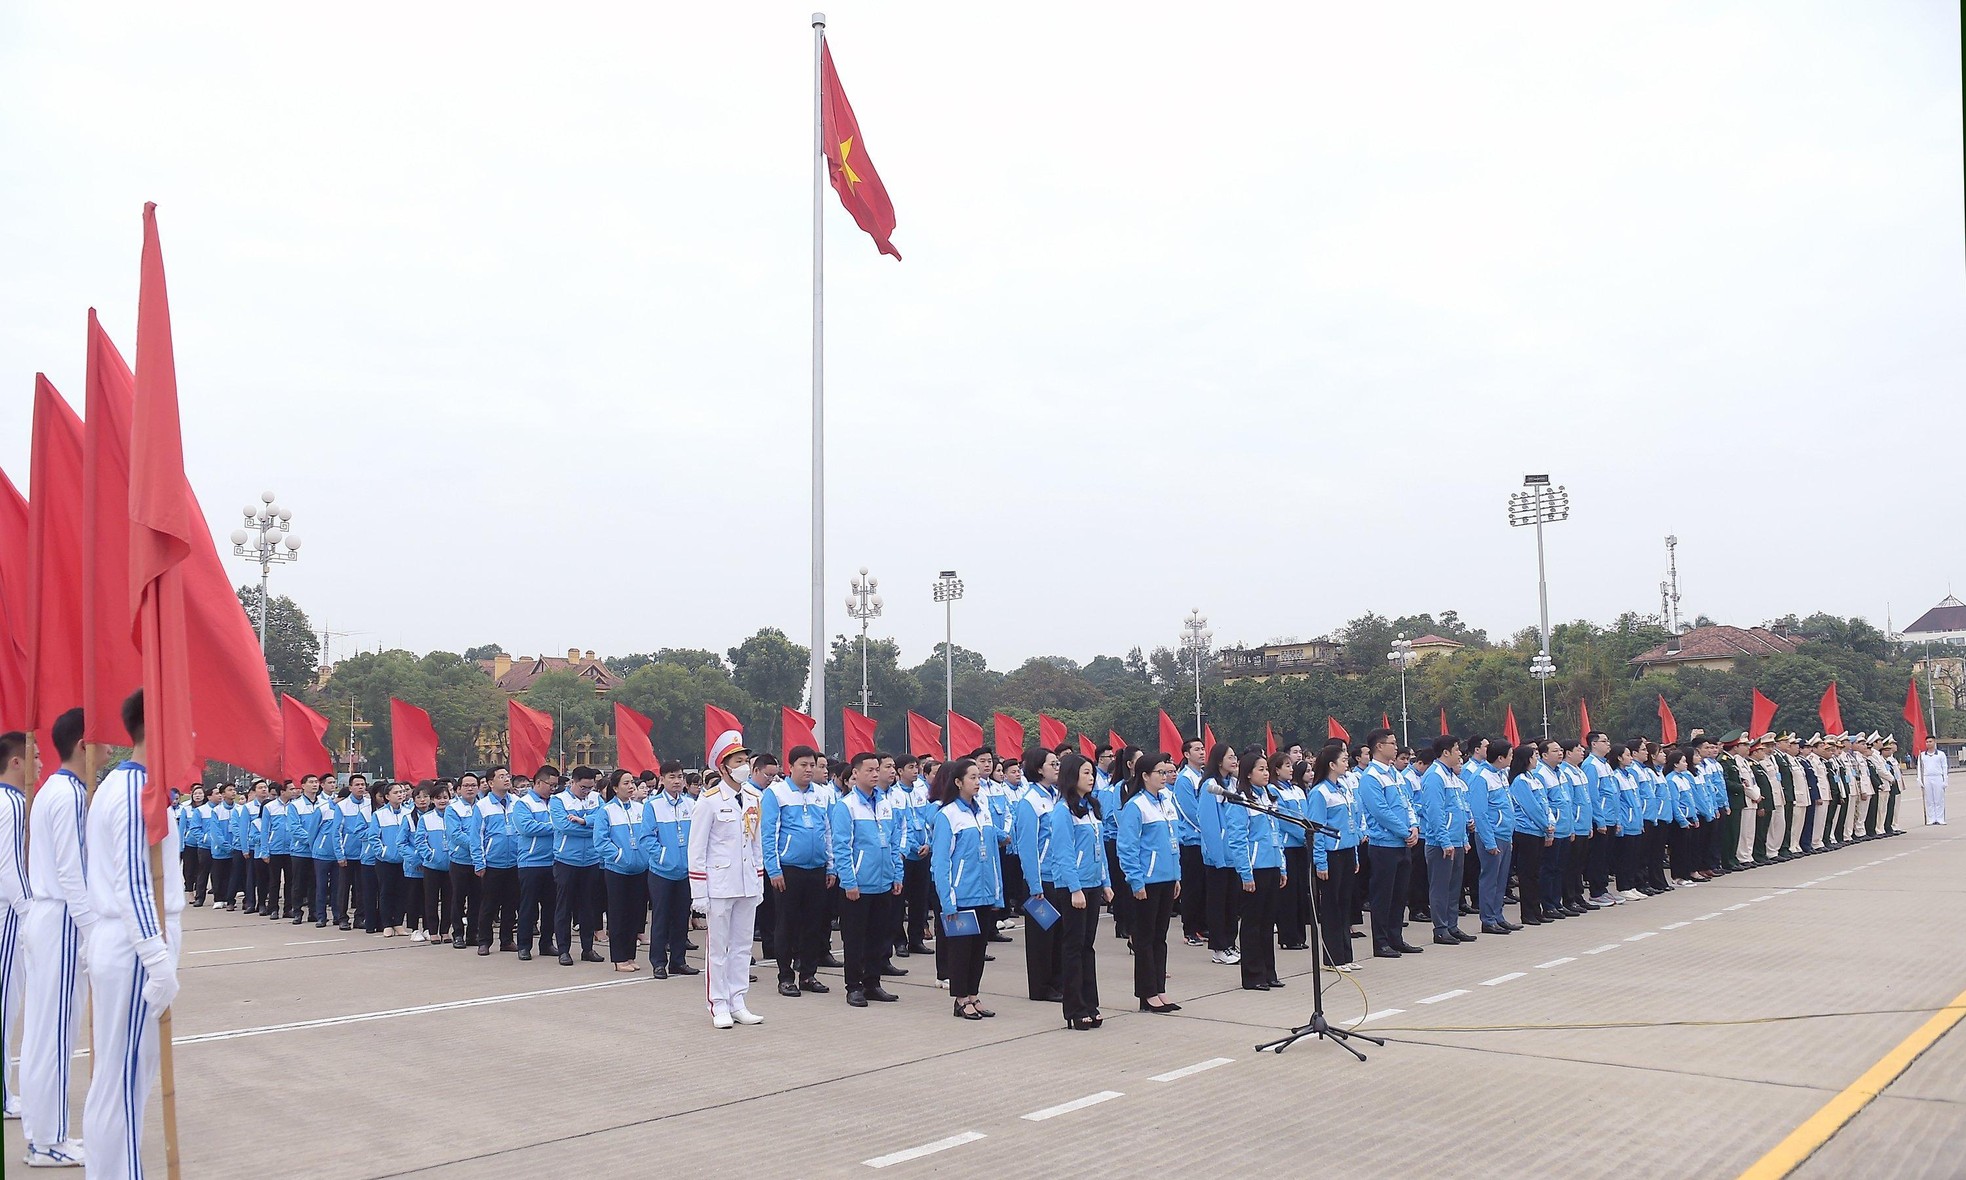 980 đại biểu tham dự Đại hội đại biểu toàn quốc Đoàn TNCS Hồ Chí Minh lần thứ XII làm lễ báo công dâng Bác. Ảnh: Tienphong.vn